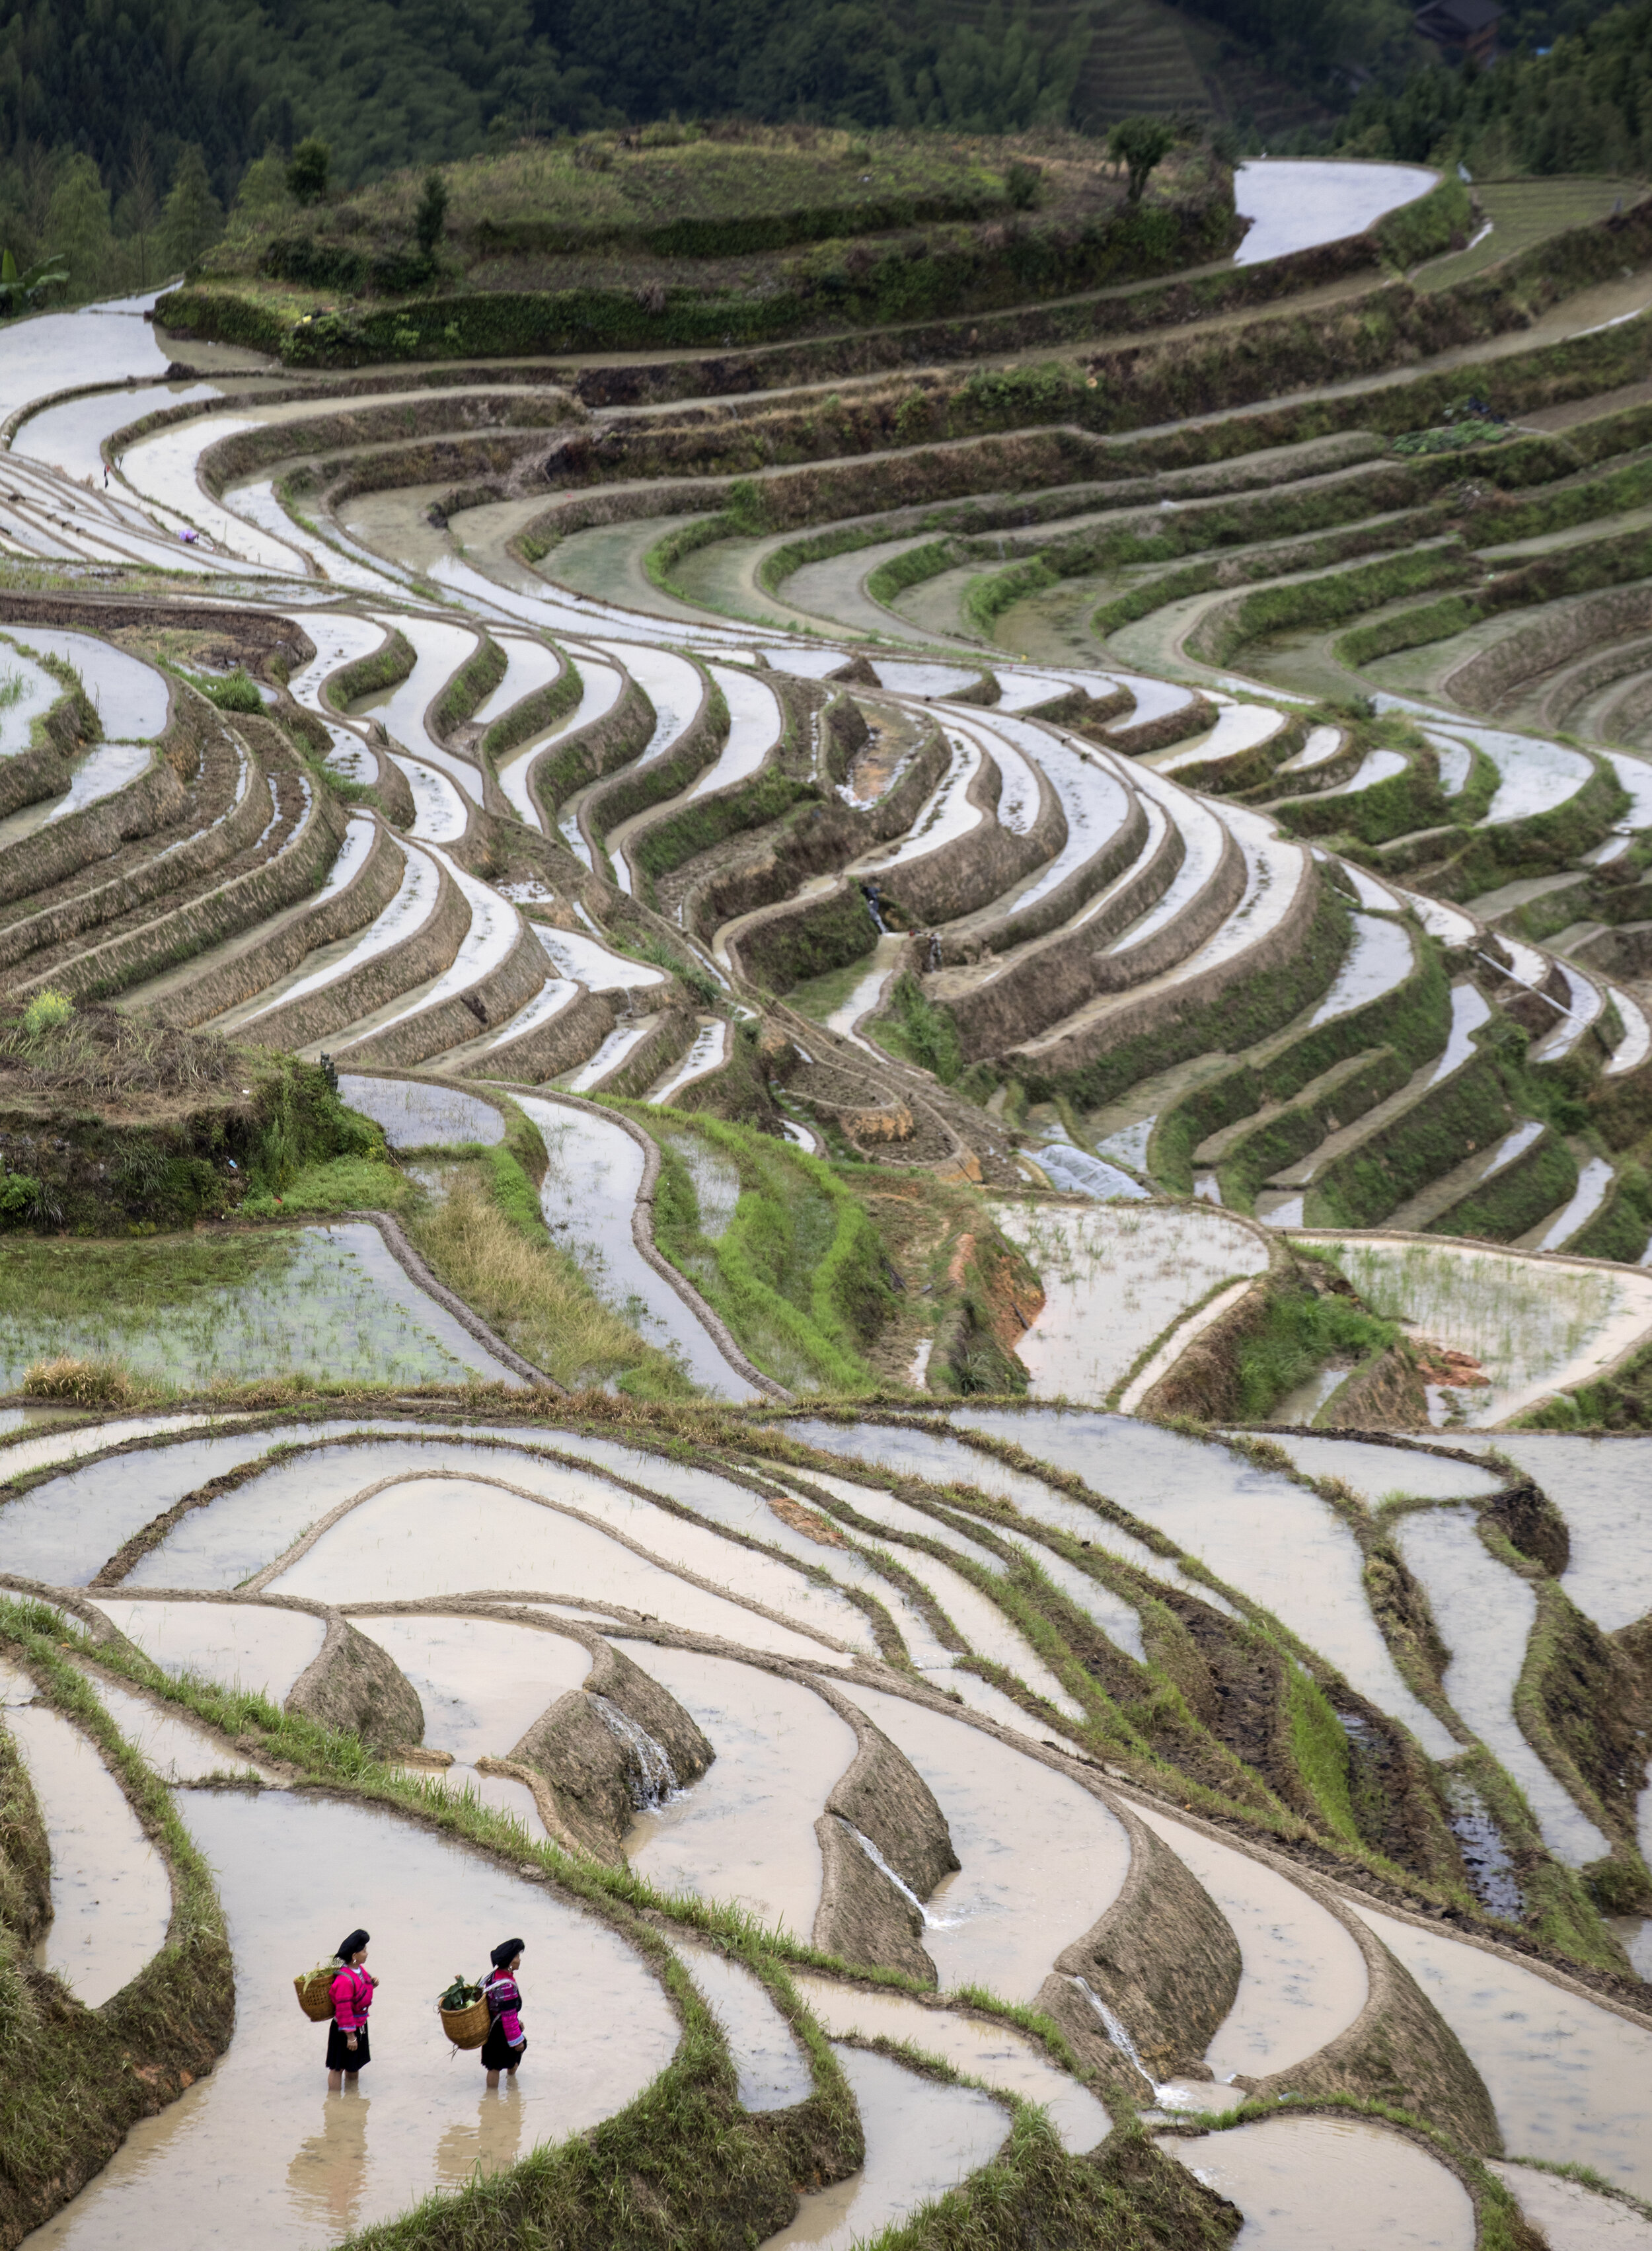 36. The Landscape Photographer’s  Achilles Heel – Longhi Rice Terraces, China